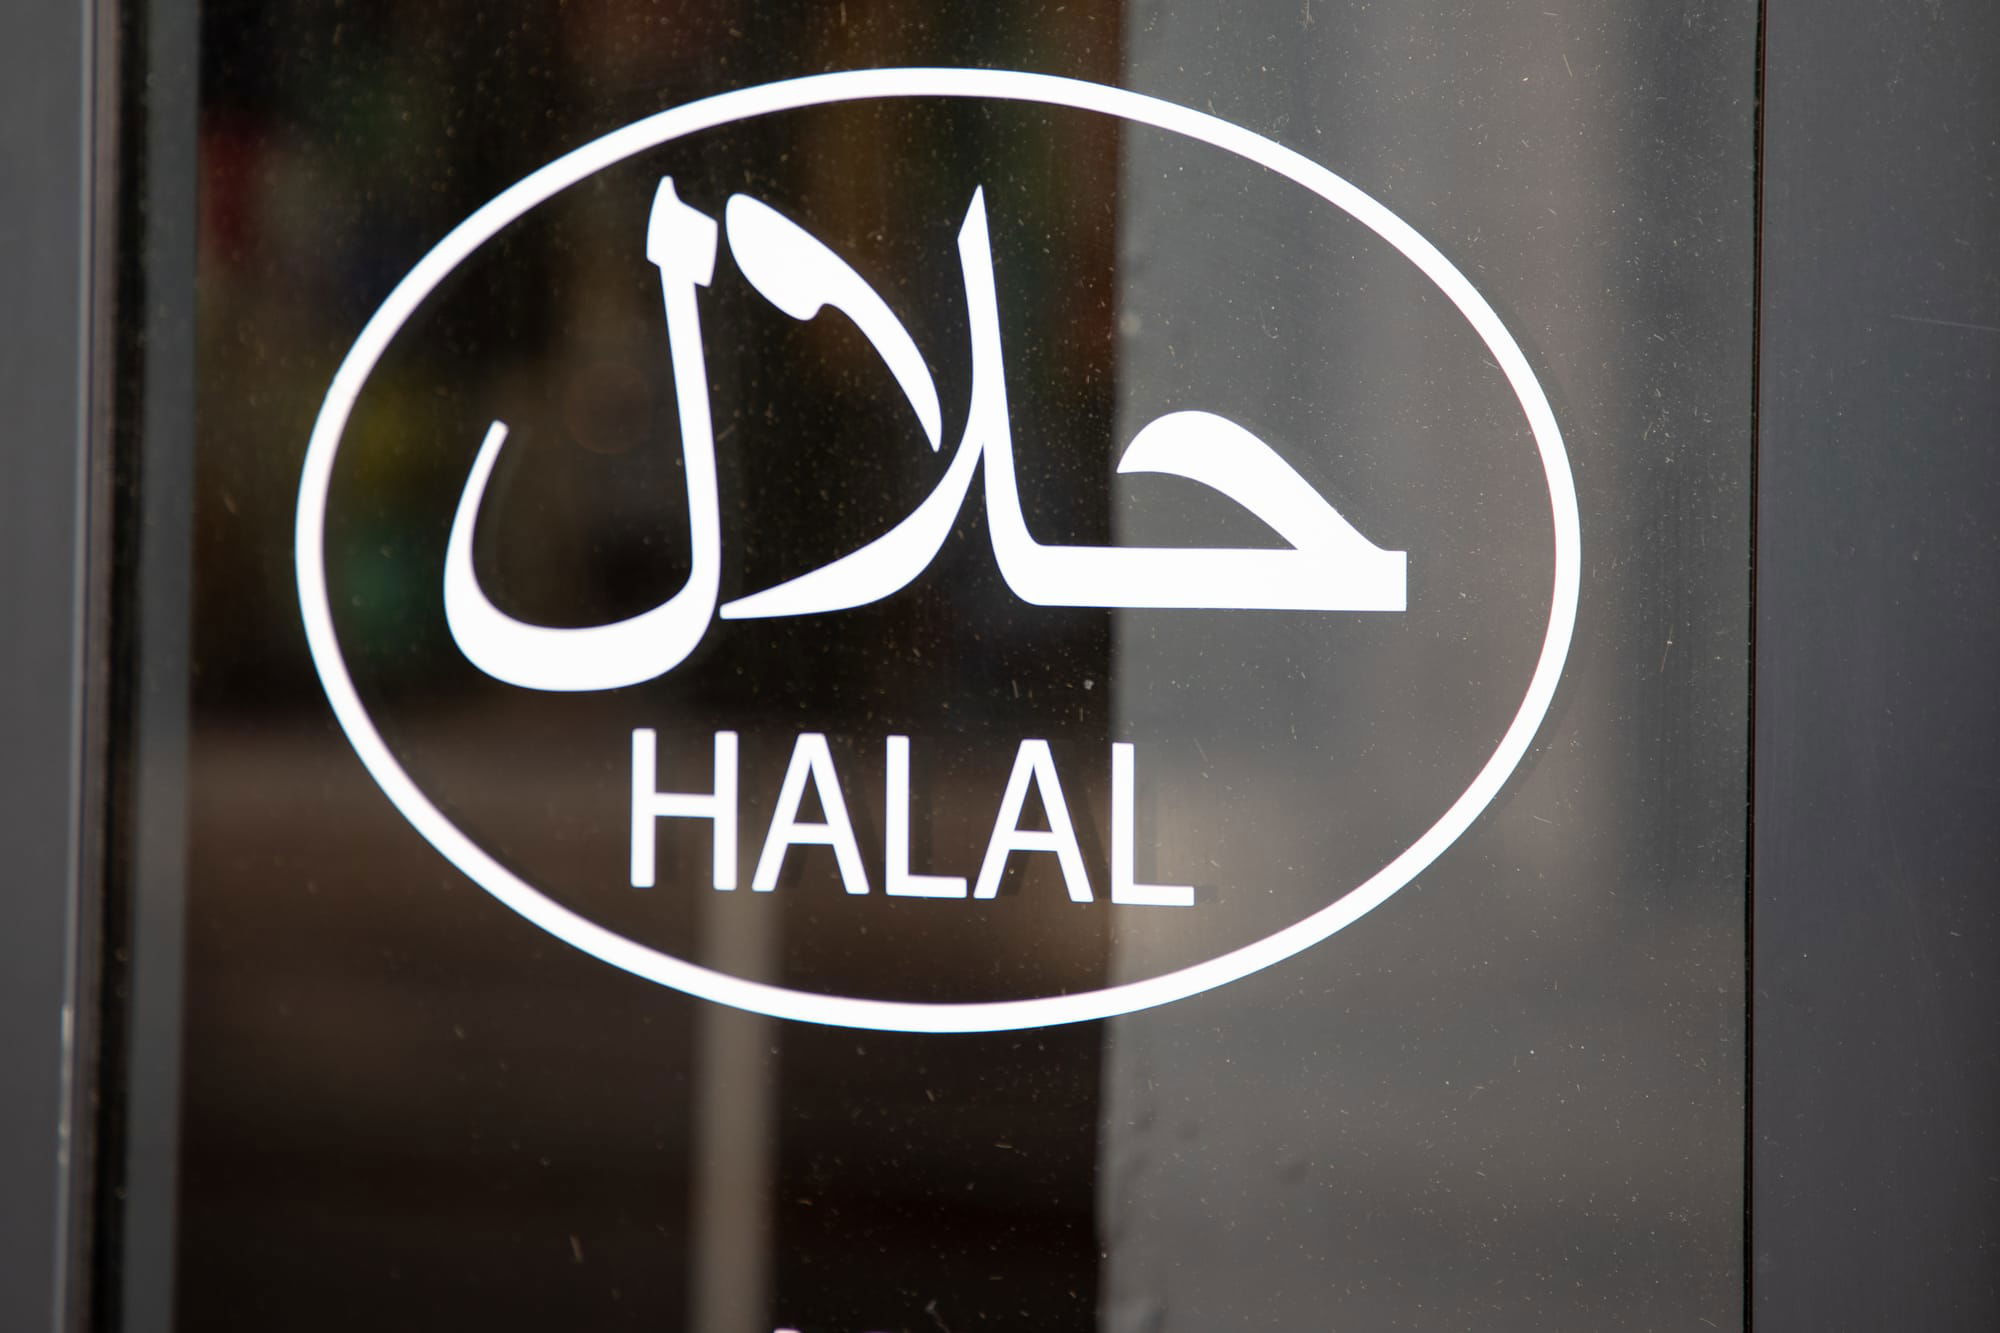 Halal fillings allergen and ingredient information.